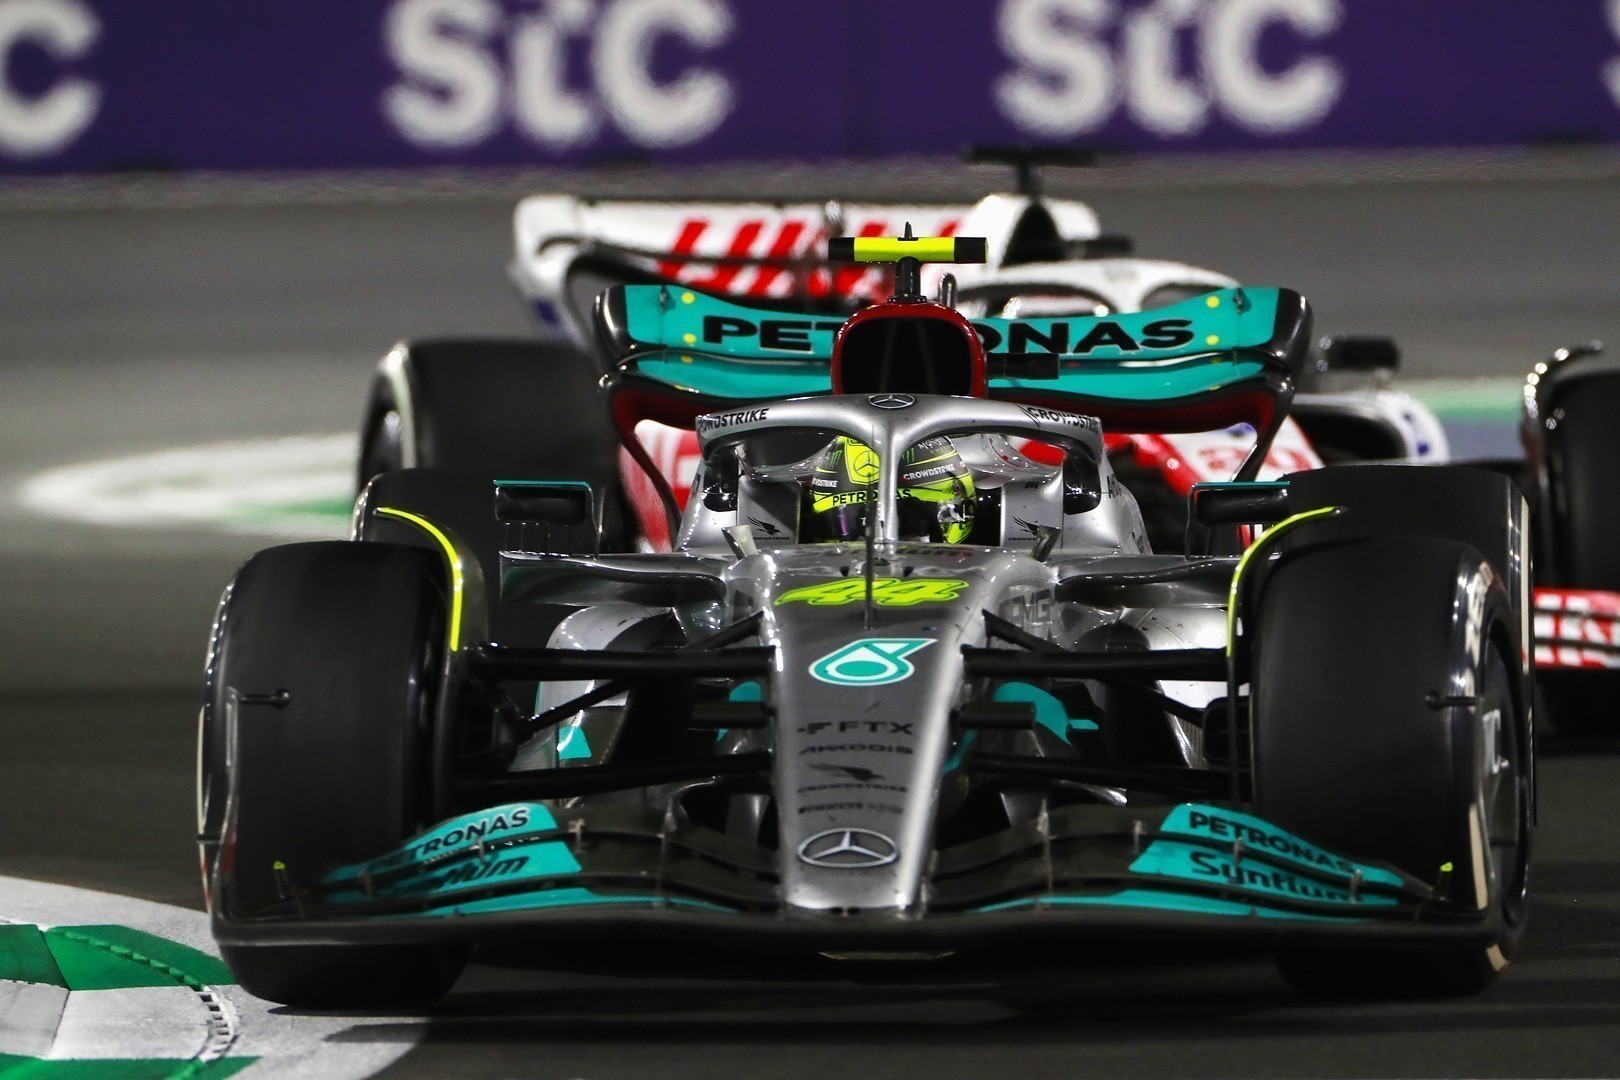 Ποιος θα το πίστευε ότι ο Μάγκνουσεν οδηγώντας τη Haas θα πίεζε και θα περνούσε τον Χάμιλτον με τη Mercedes στα ίσα;